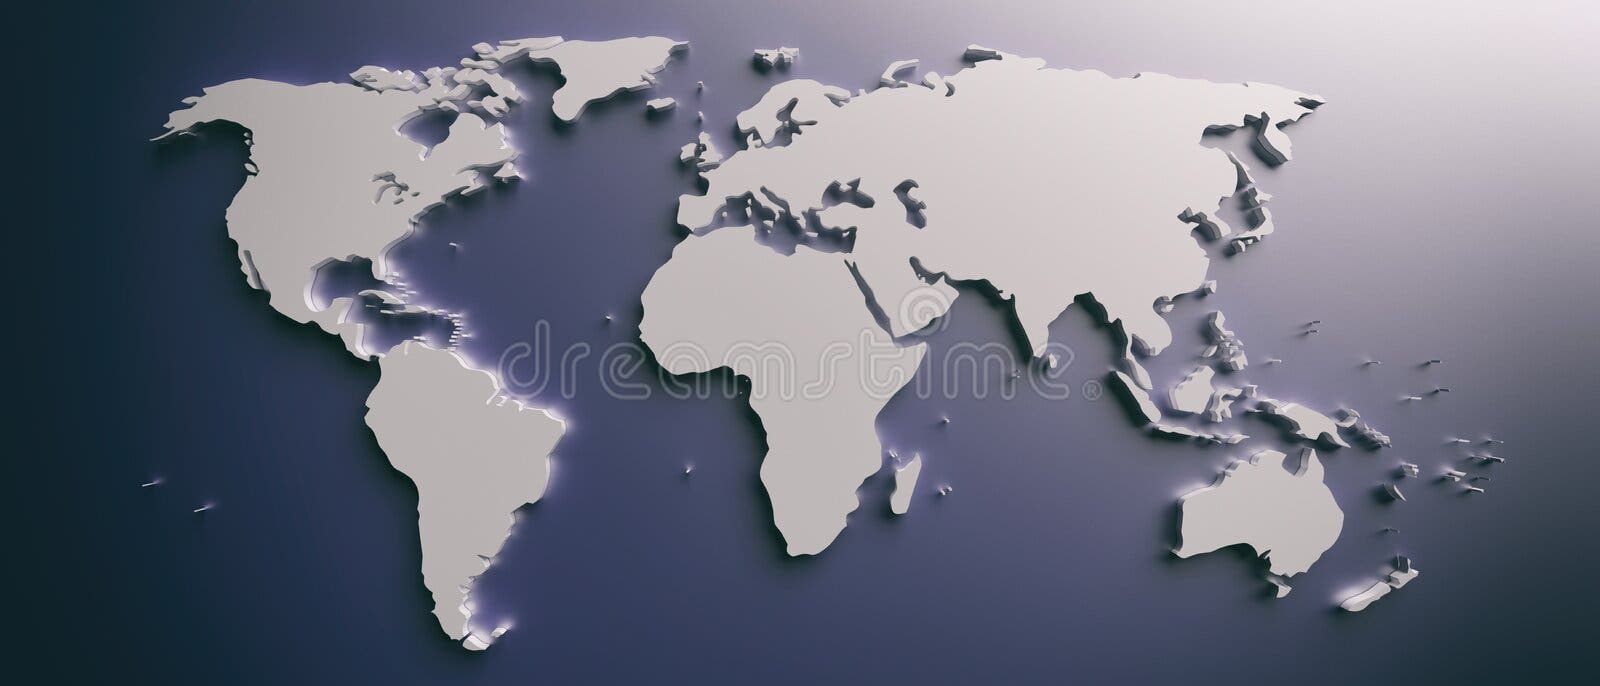 Mantenimiento rural Calor Mapa Mundial Plano, Continentes En Blanco Contra Fondo Azul 3.ª Ilustración  Stock de ilustración - Ilustración de turismo, plano: 172389478